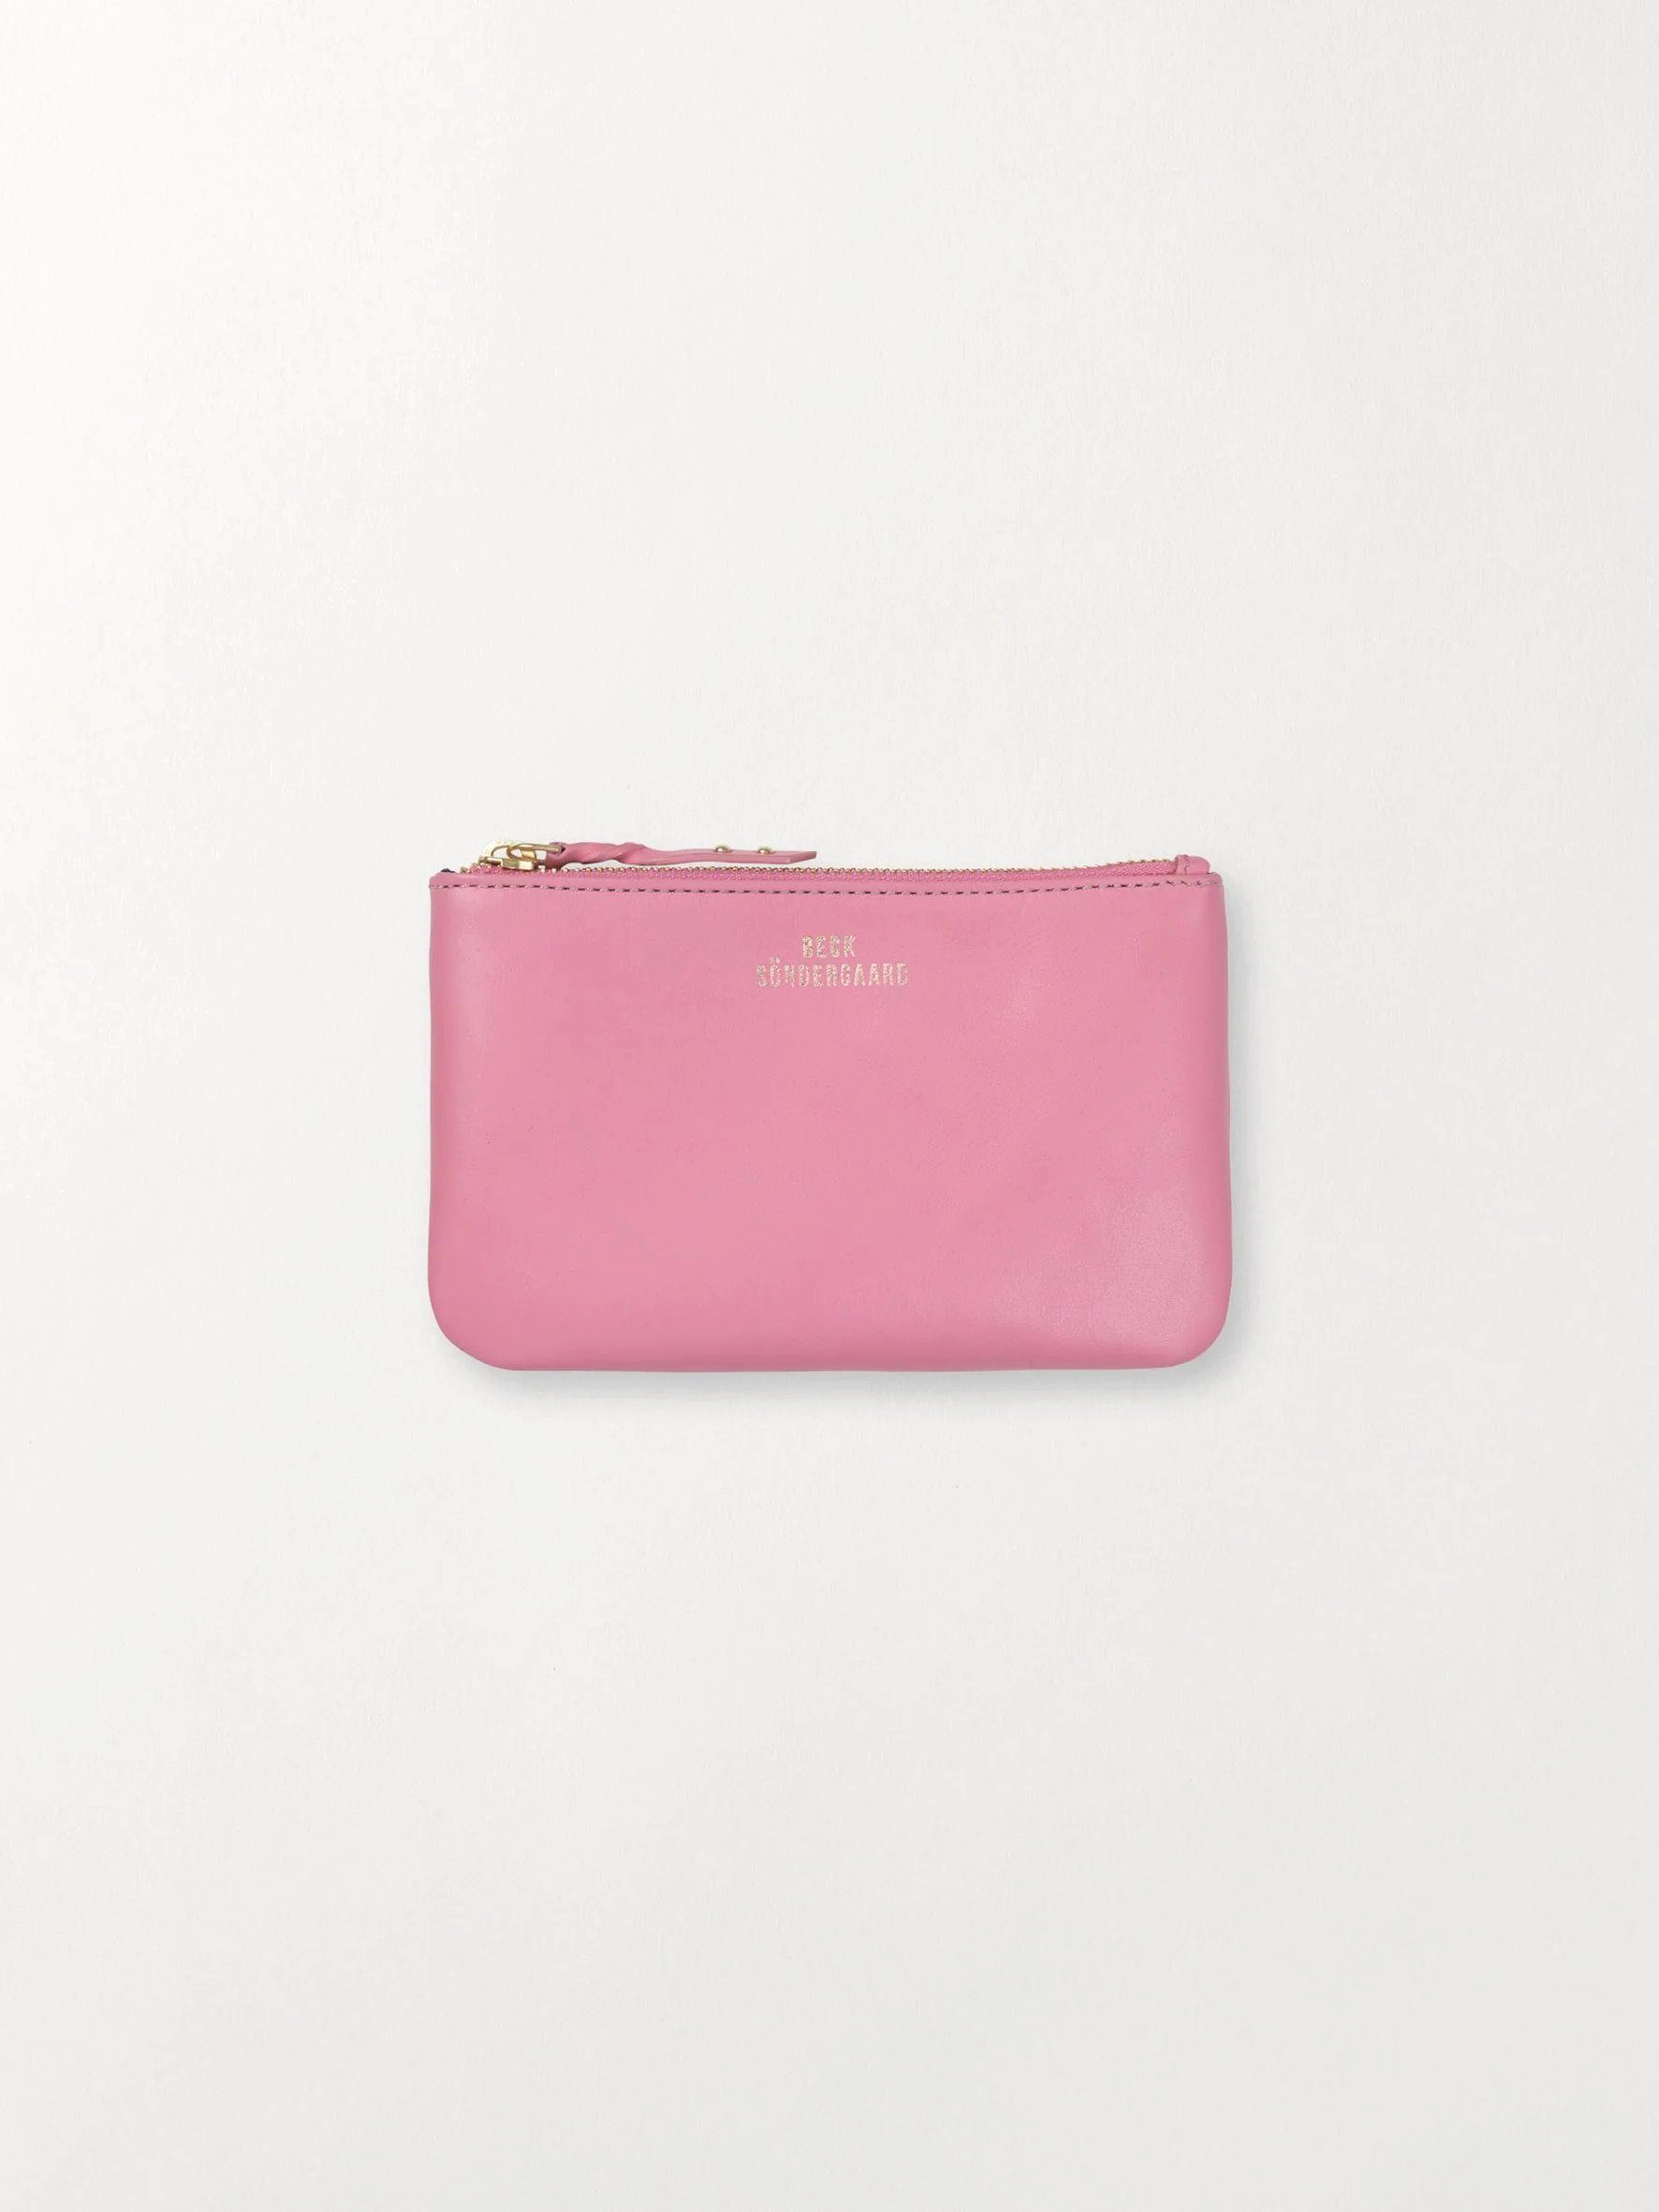 Pink Portemonnaie Geldbörse x Brieftasche Aalleder, Sachet Lyla in H:11 aus Becksöndergaard x T:1 - B:18 cm